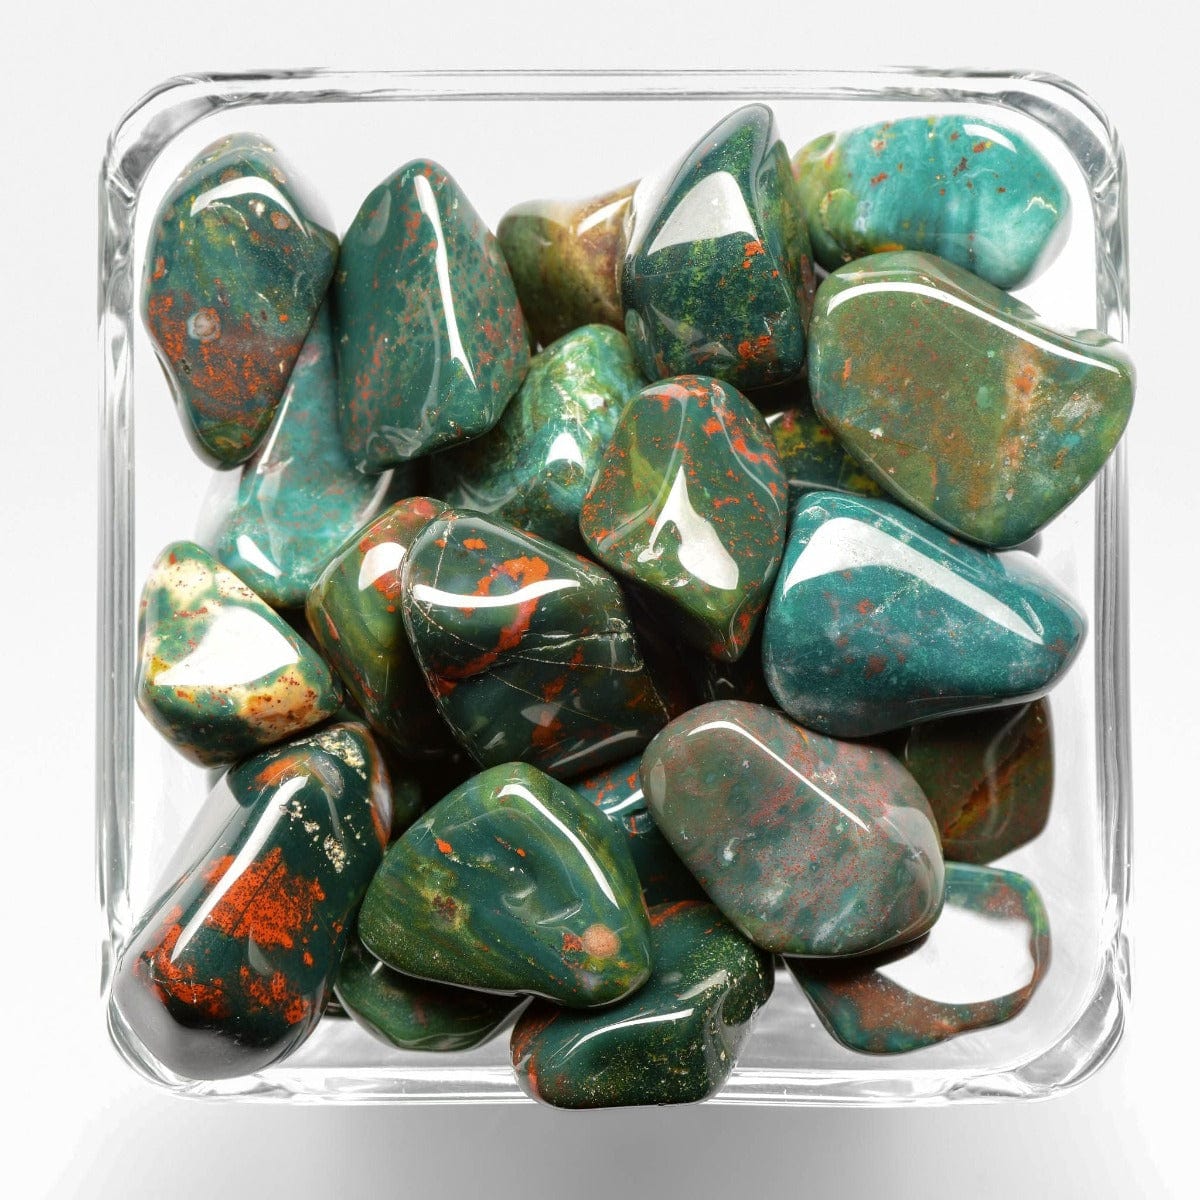 Bloodstone Tumbled Stones - Polished Small